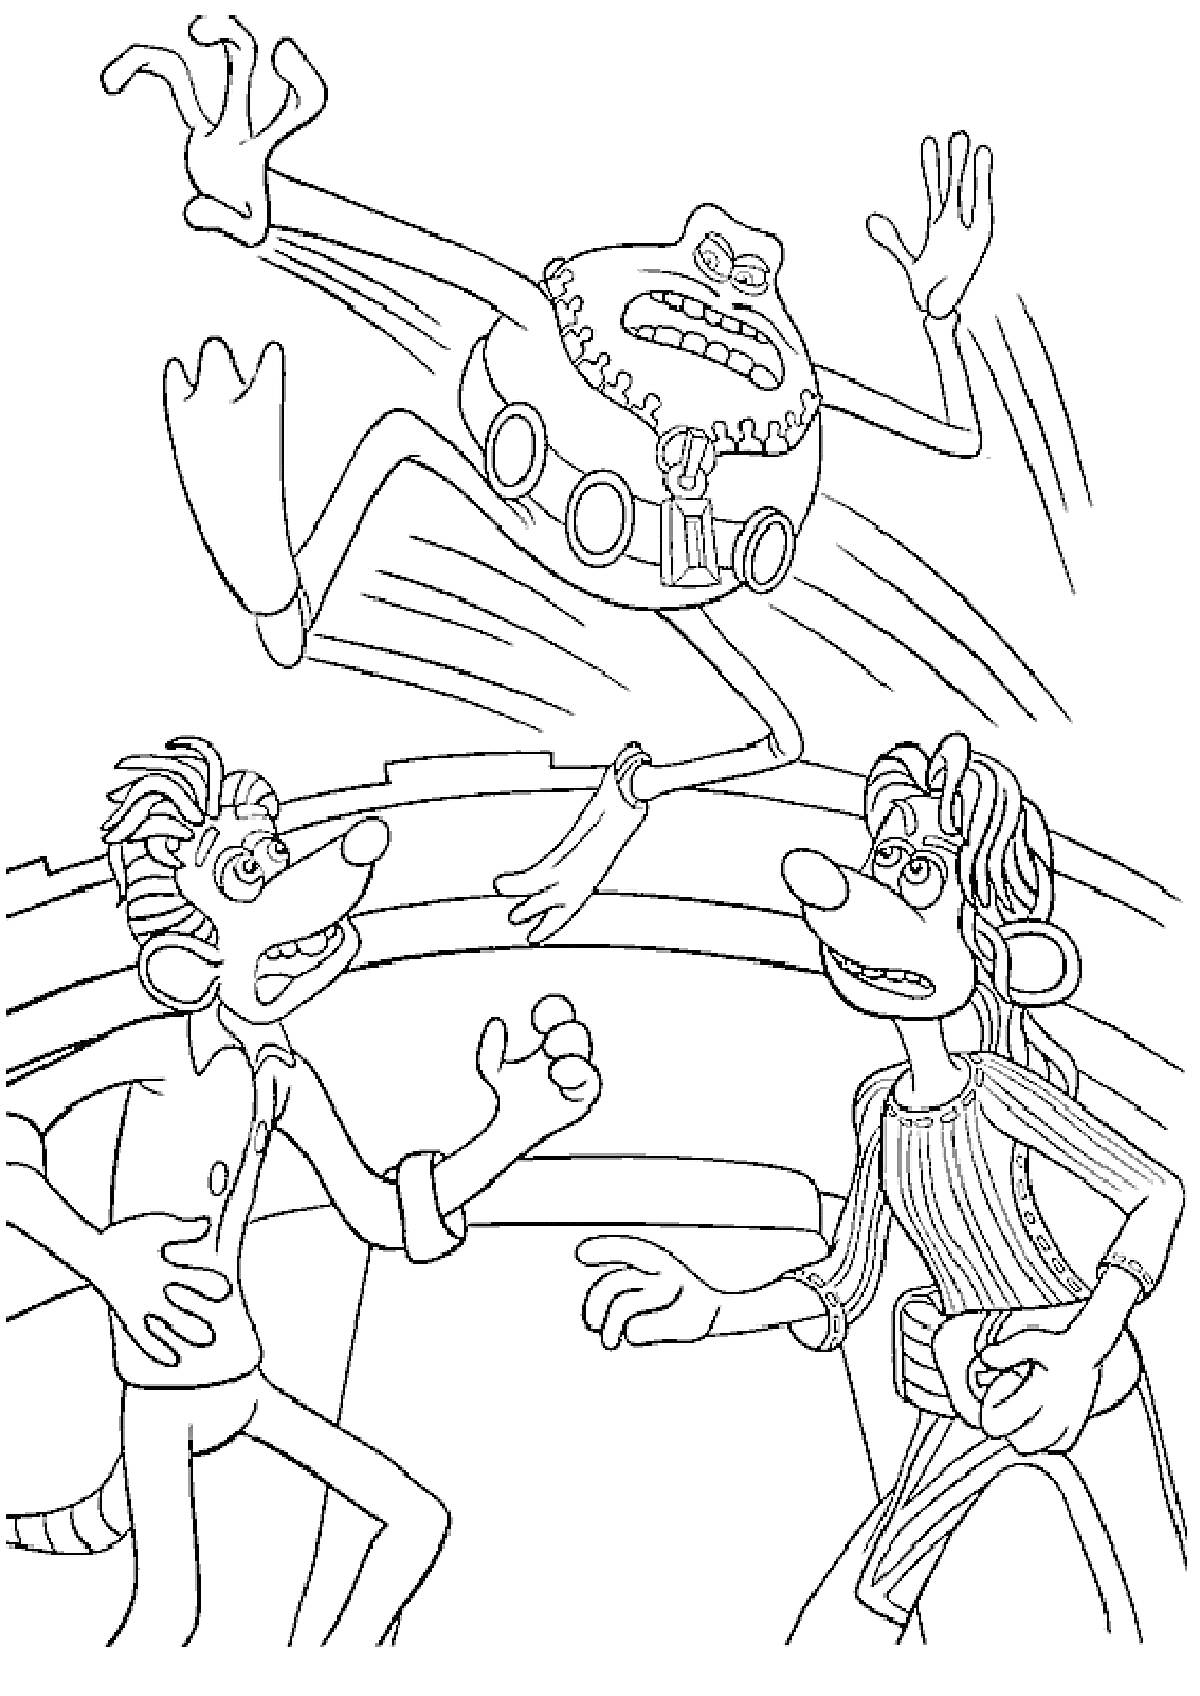 Раскраска Три мультяшных персонажа: один прыгает, двое внизу поднимают руки в удивлении